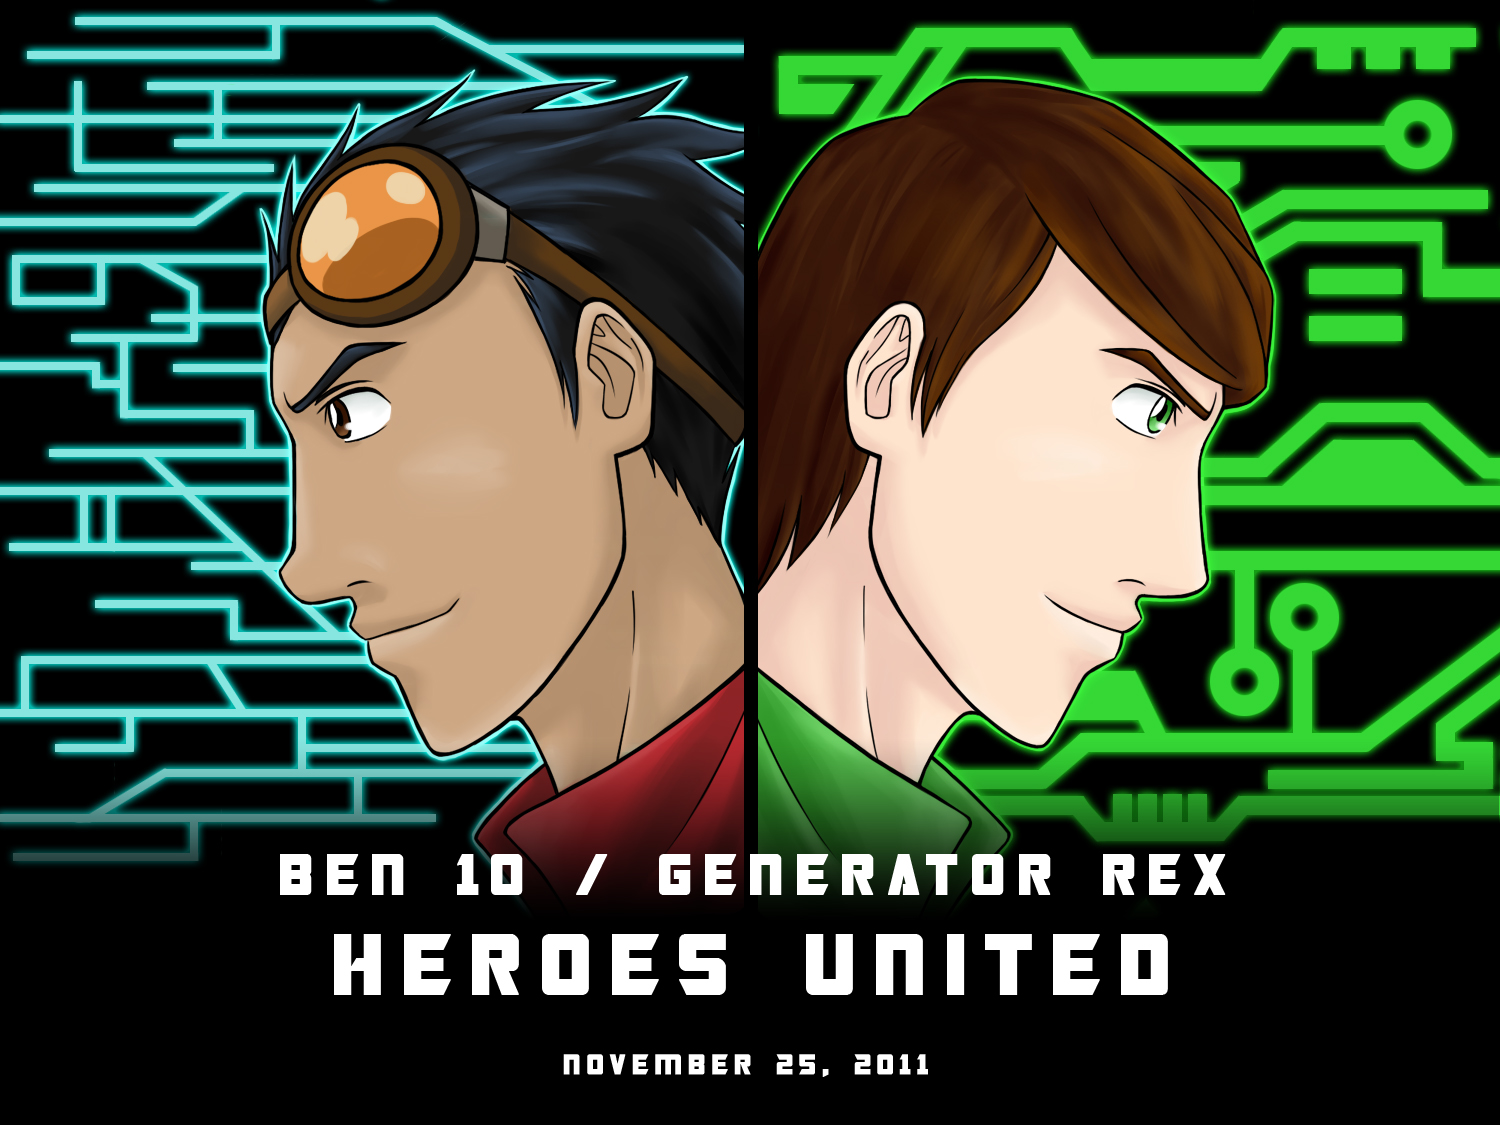 Ben 10/Generator Rex: Heroes United Wallpapers